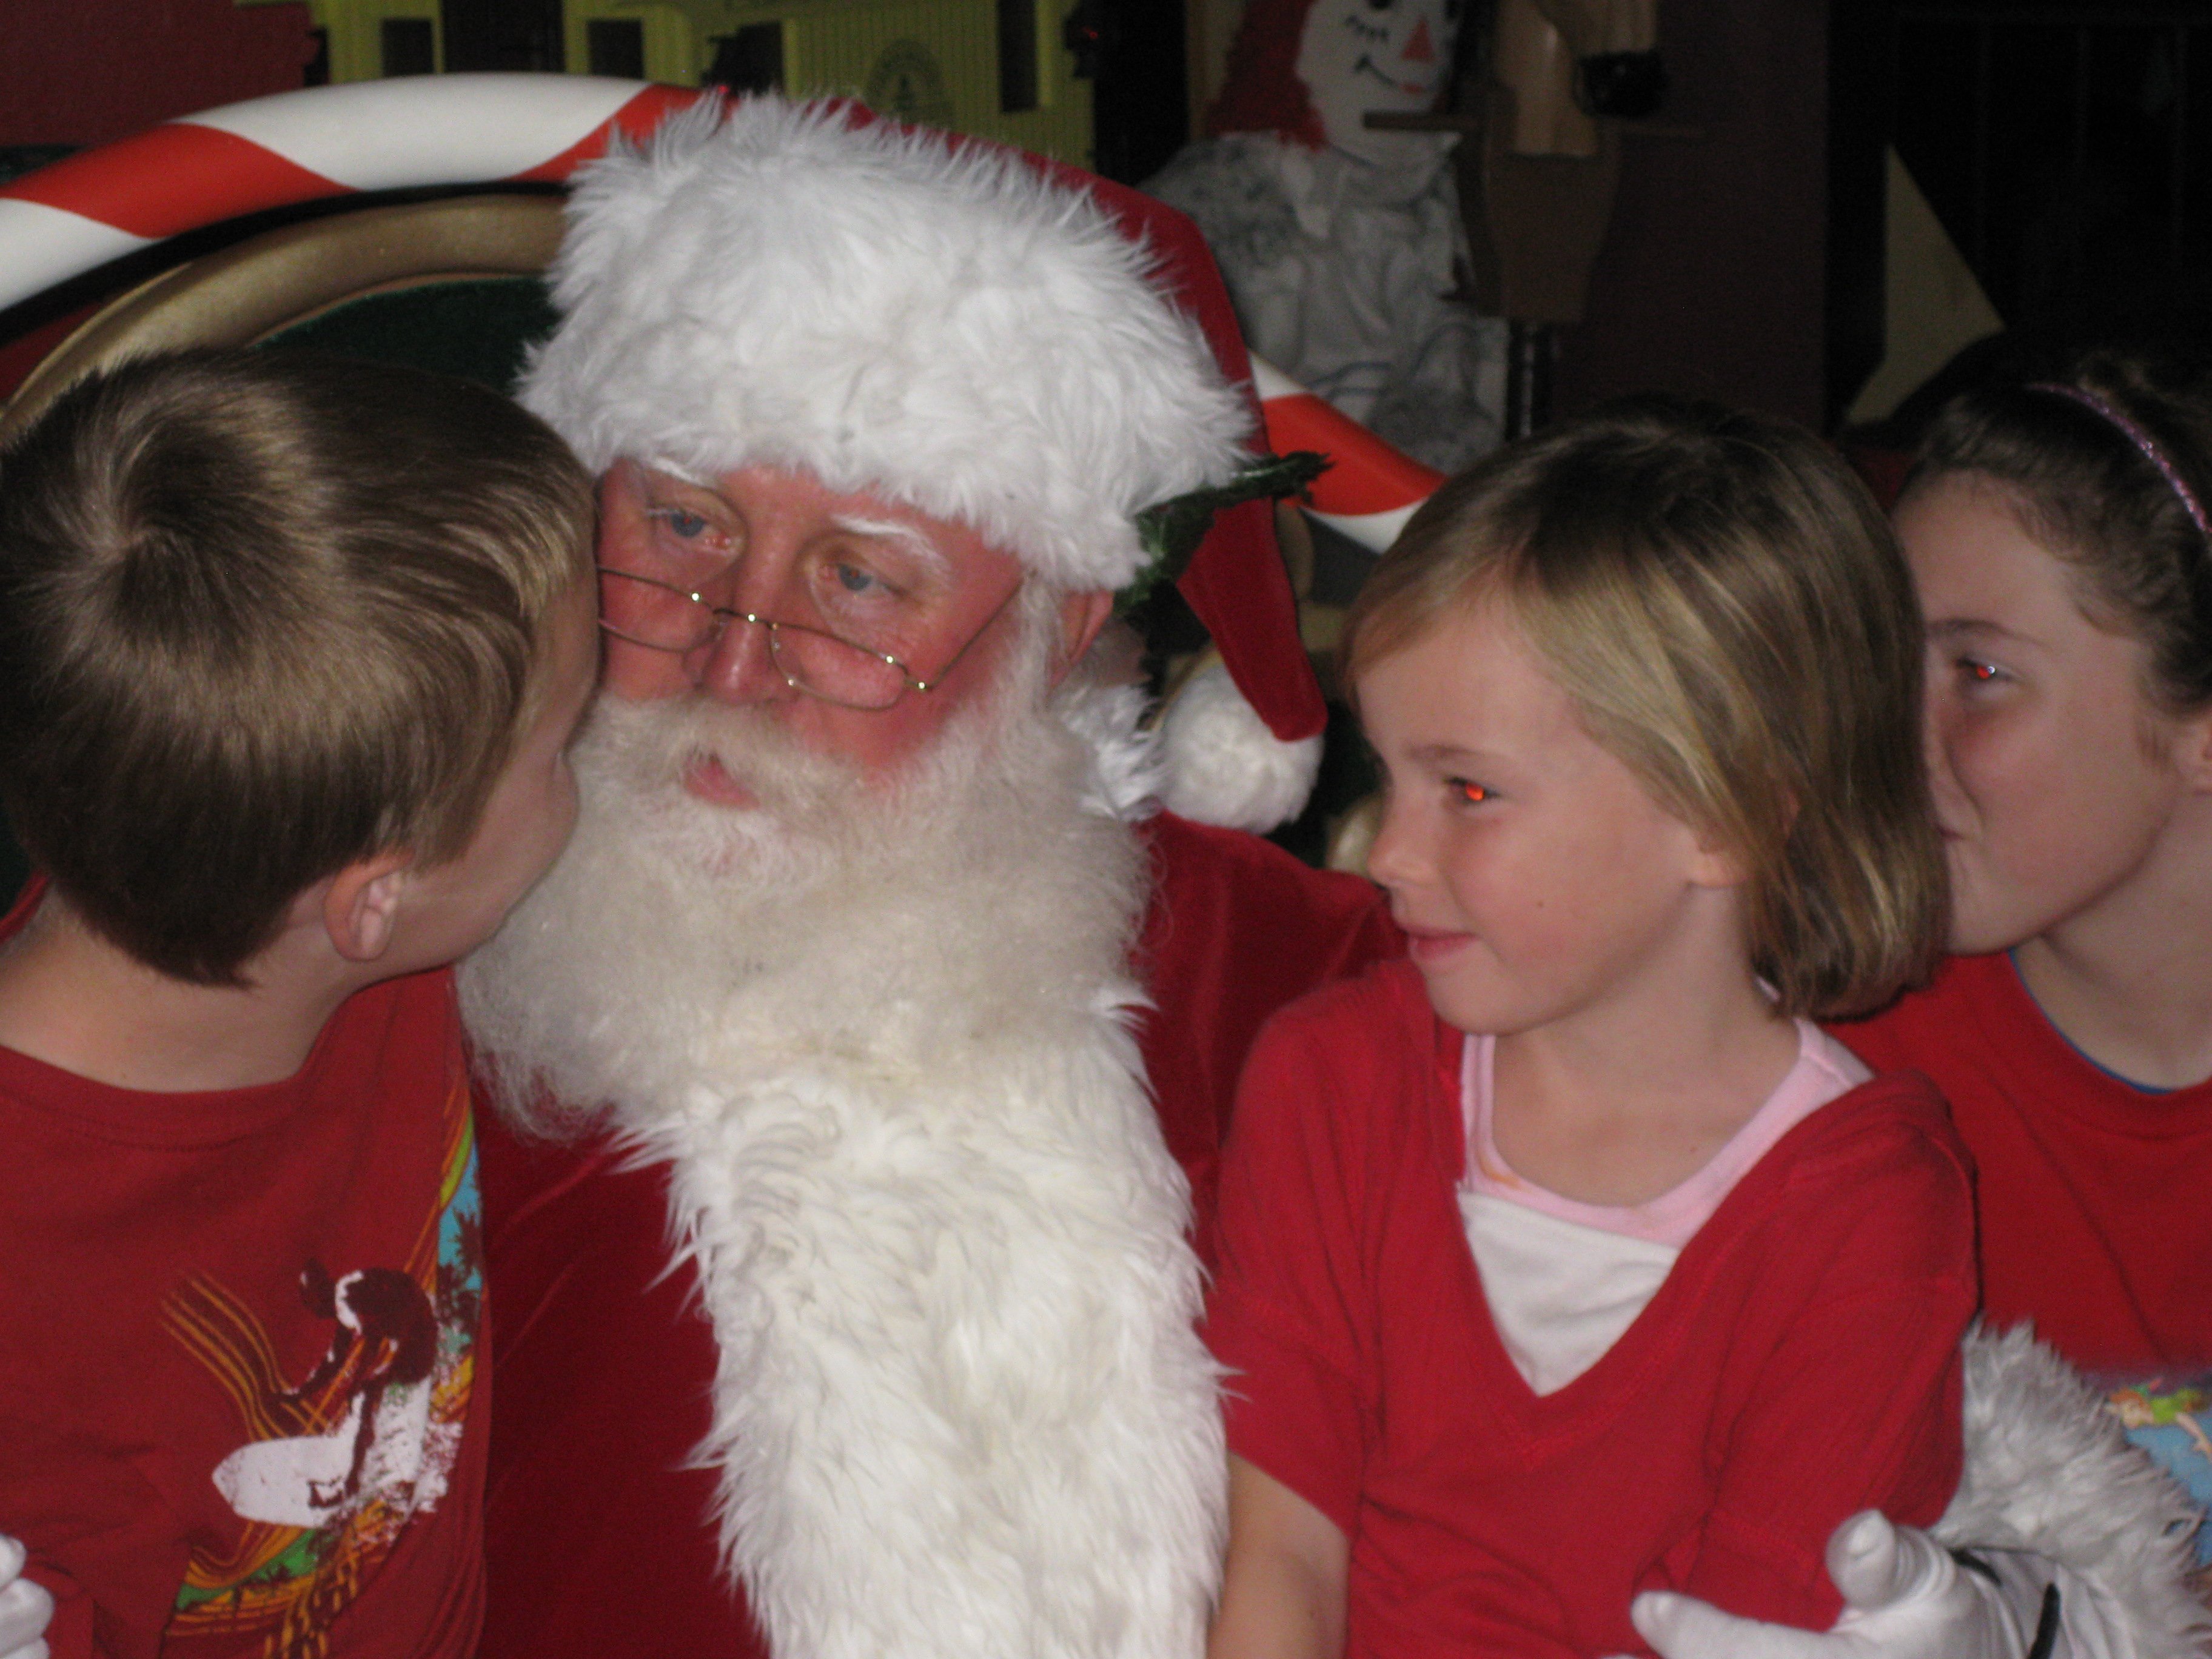 We met Santa in the Magic Kingdom December 2009